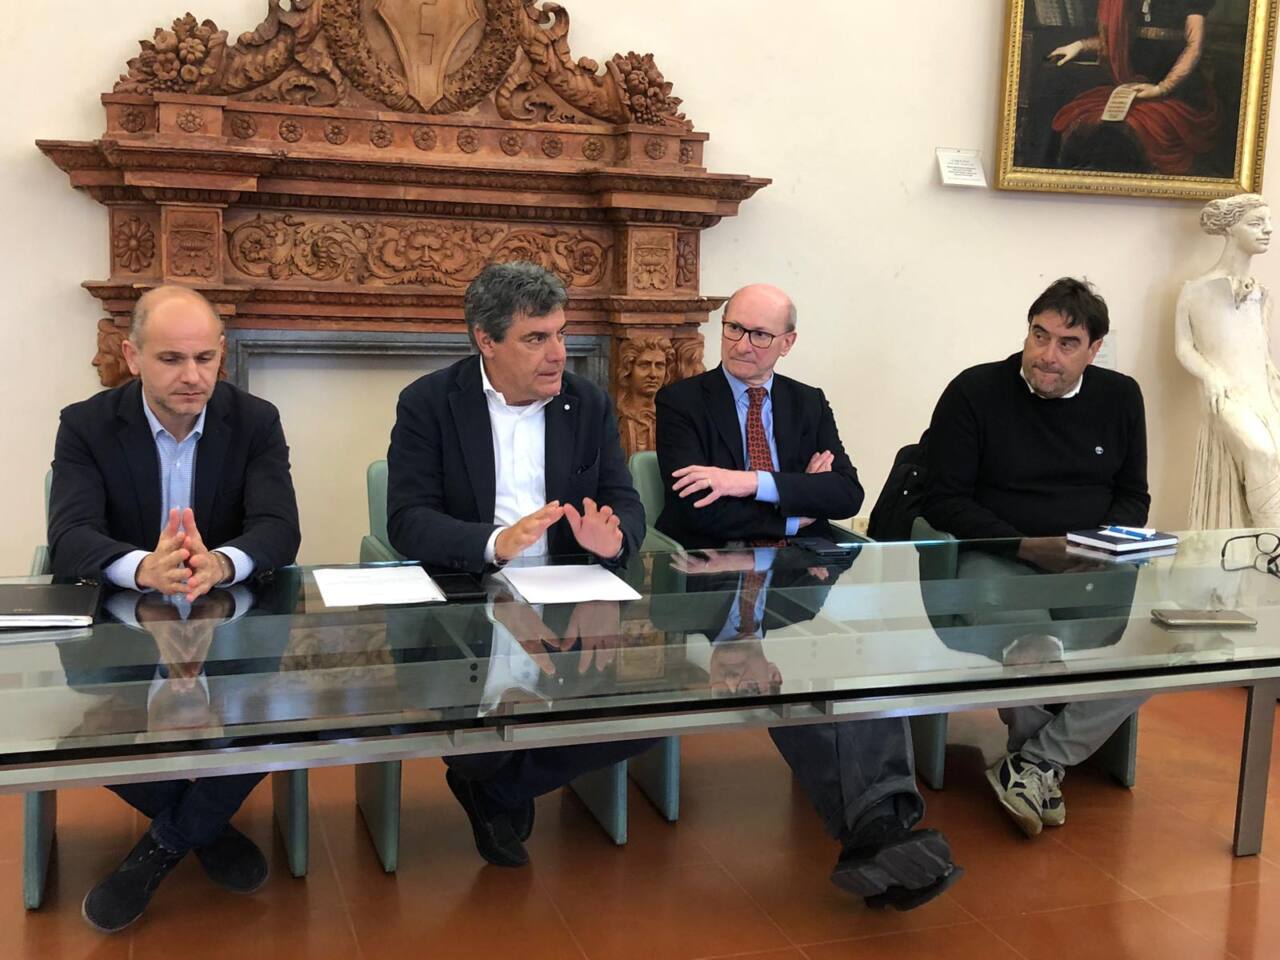 Collegamento Umbria – Marche: patto tra i sindaci di Fano, Cagli, Cantiano e Gubbio sulla Contessa